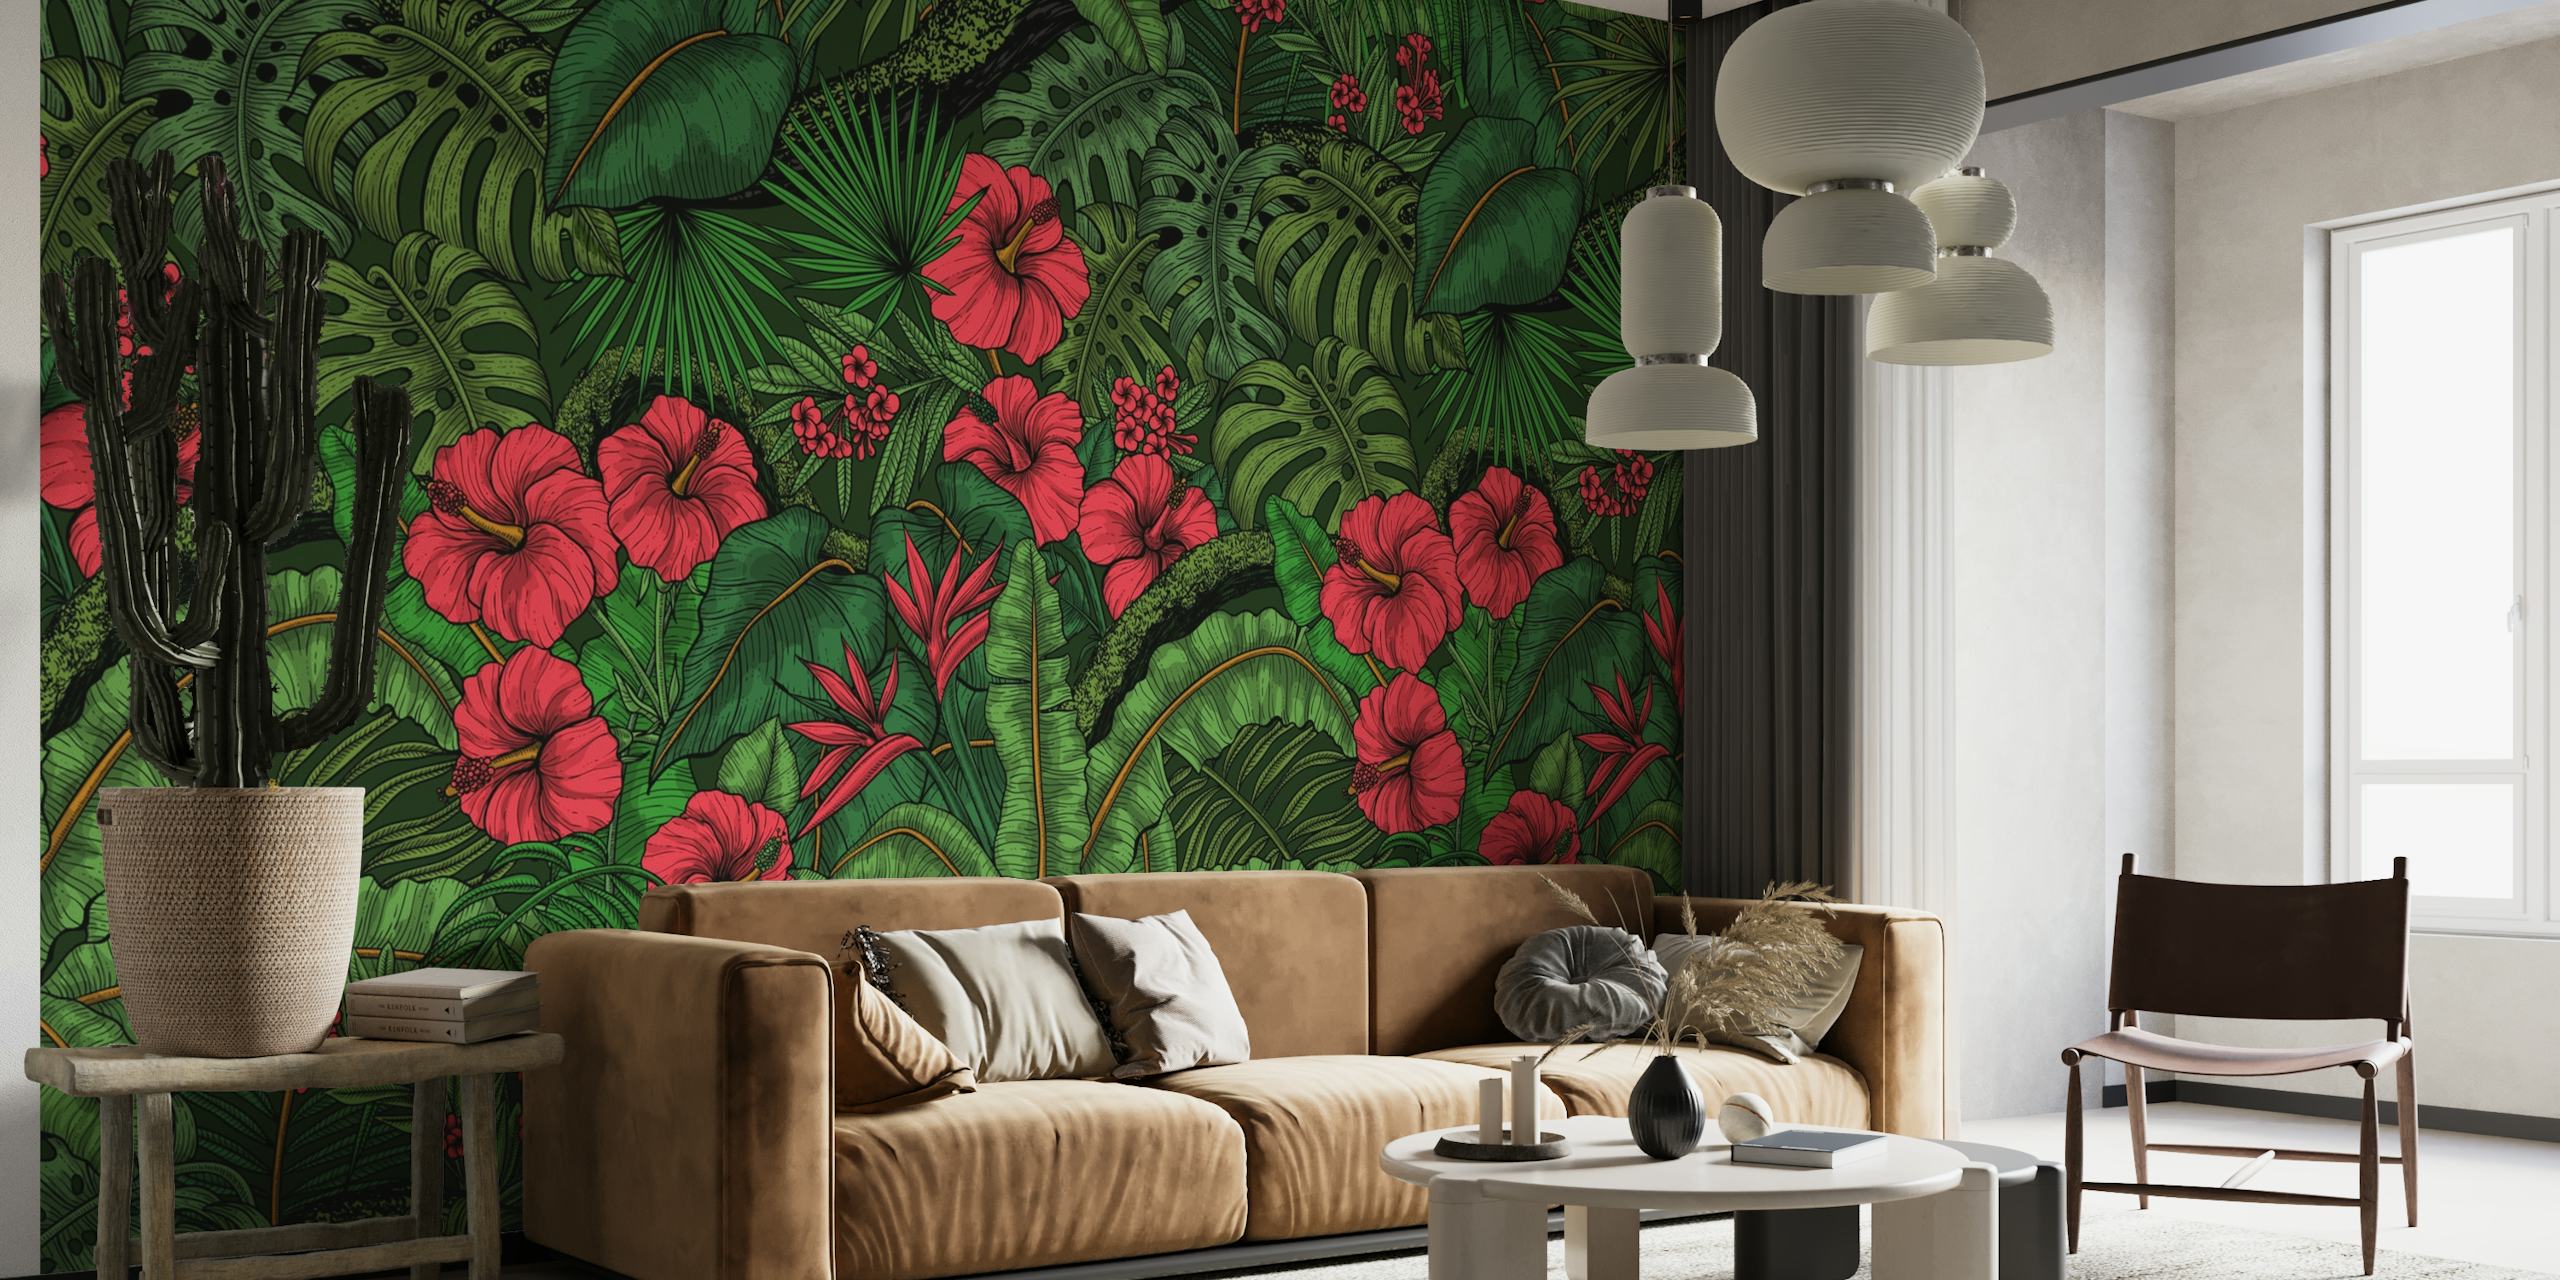 Zidni mural u živopisnom tropskom vrtu s crvenim cvjetovima i bujnim zelenim lišćem